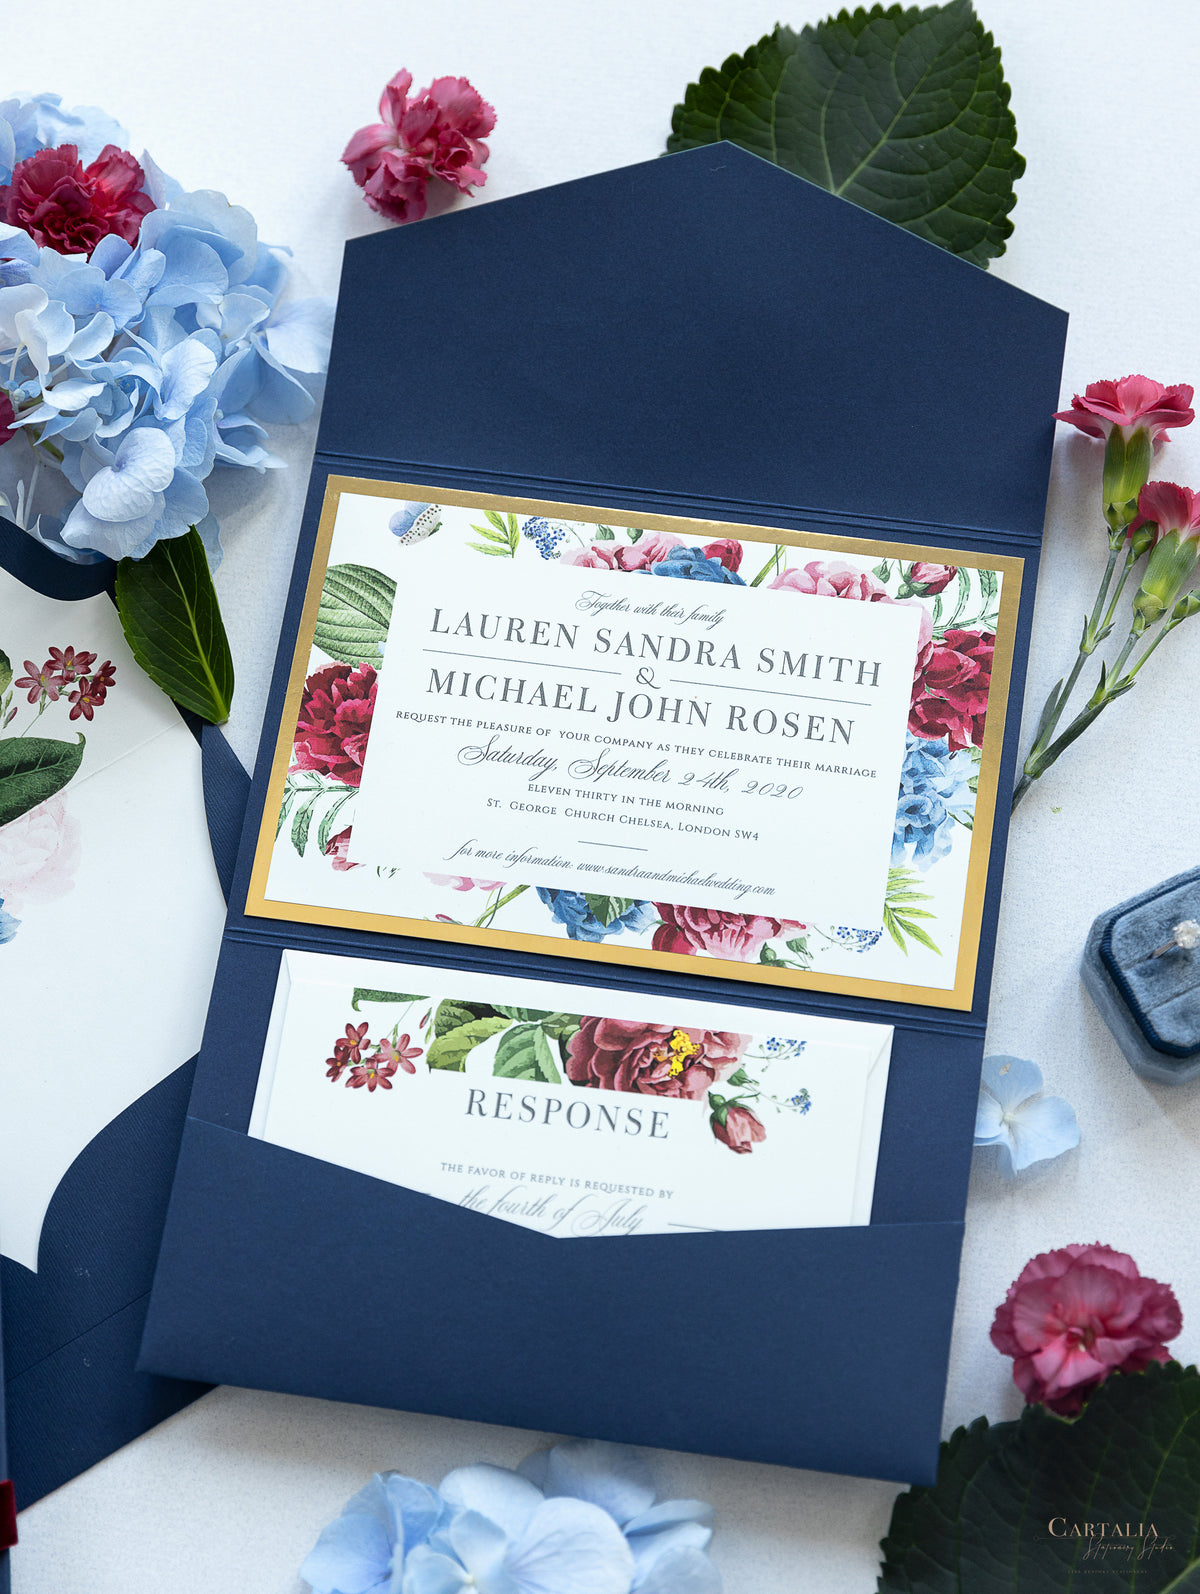 Invitation classique en rafale de fleurs avec salle de poche enveloppe plie en bleu marine